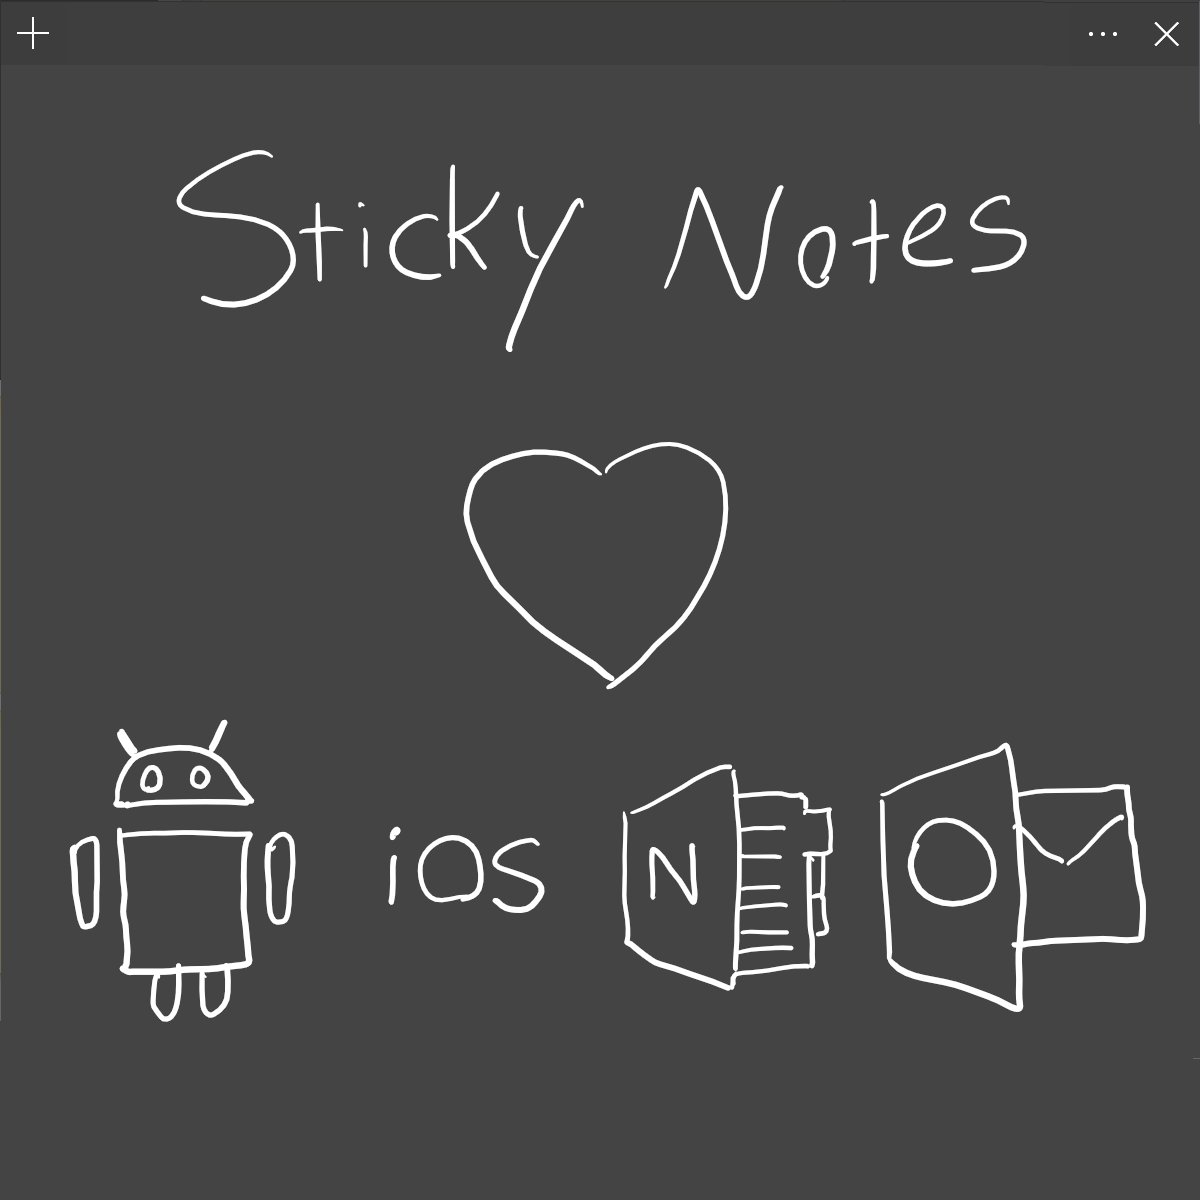 onenote sticky notes windows 10